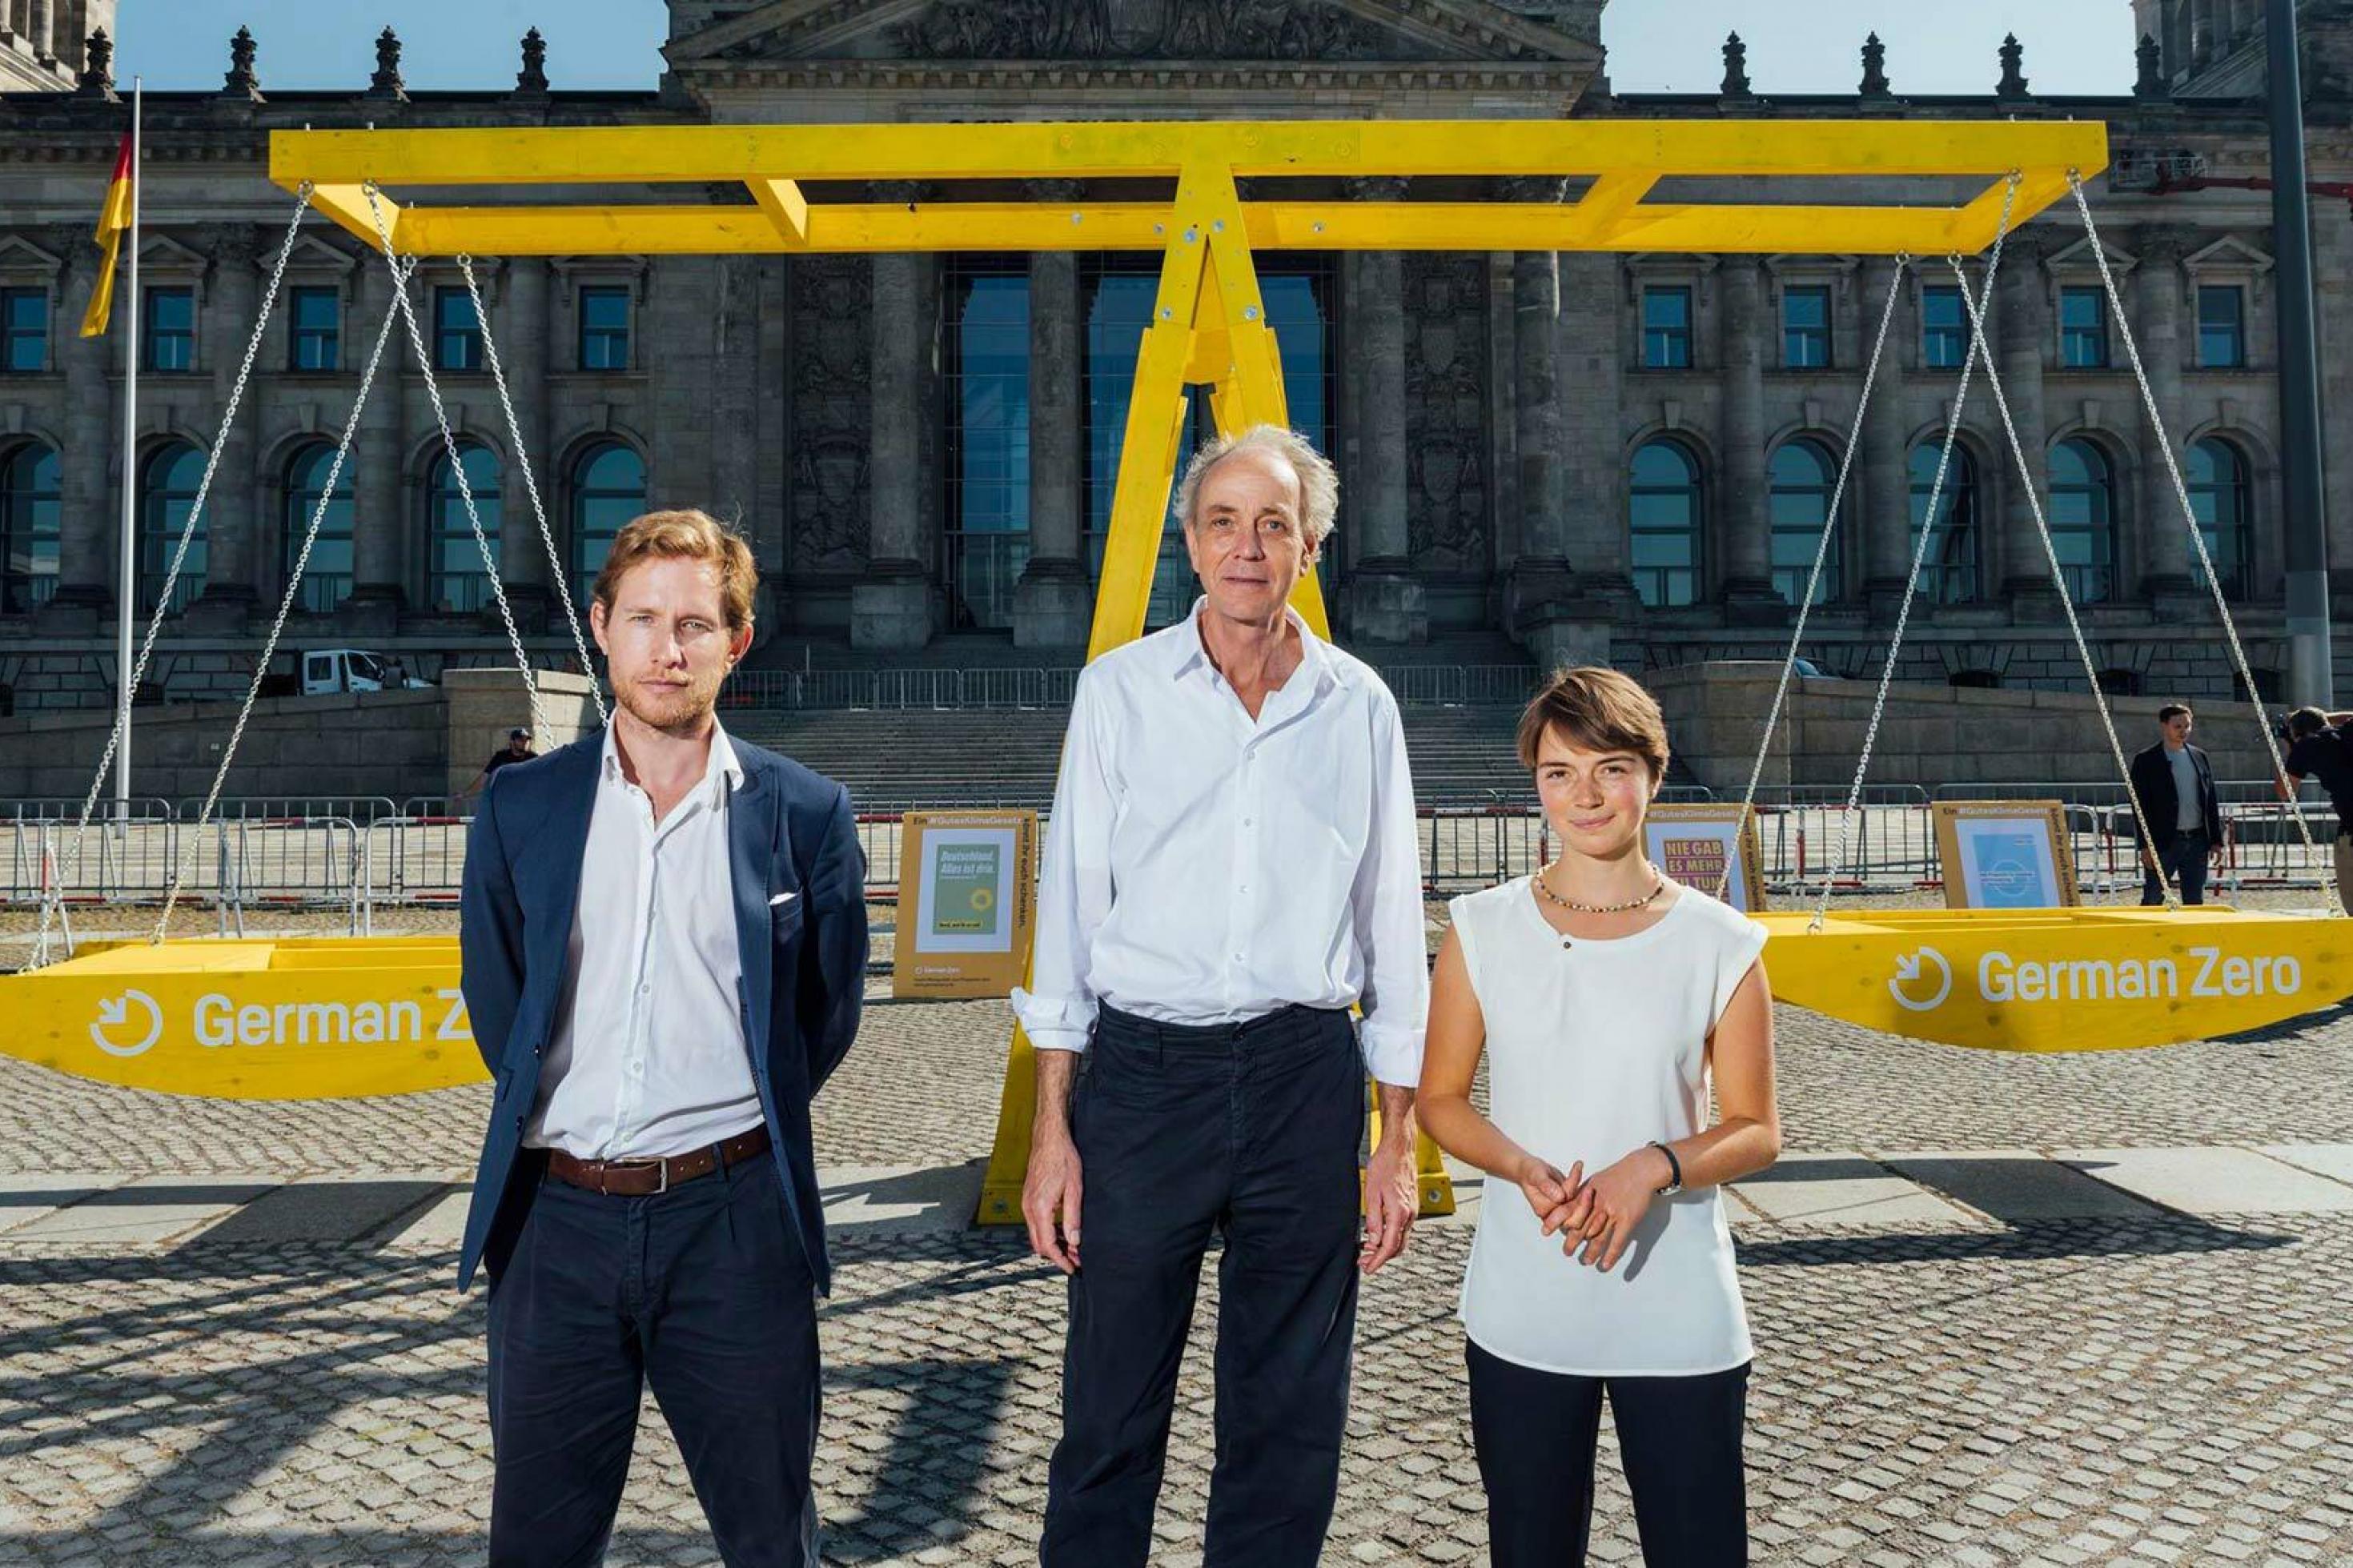 Julian Zuber, Stephan Breidenbach und Lea Nesselhauf vor einer großen symbolischen Waage vor dem Reichstagsgebäude in Berlin